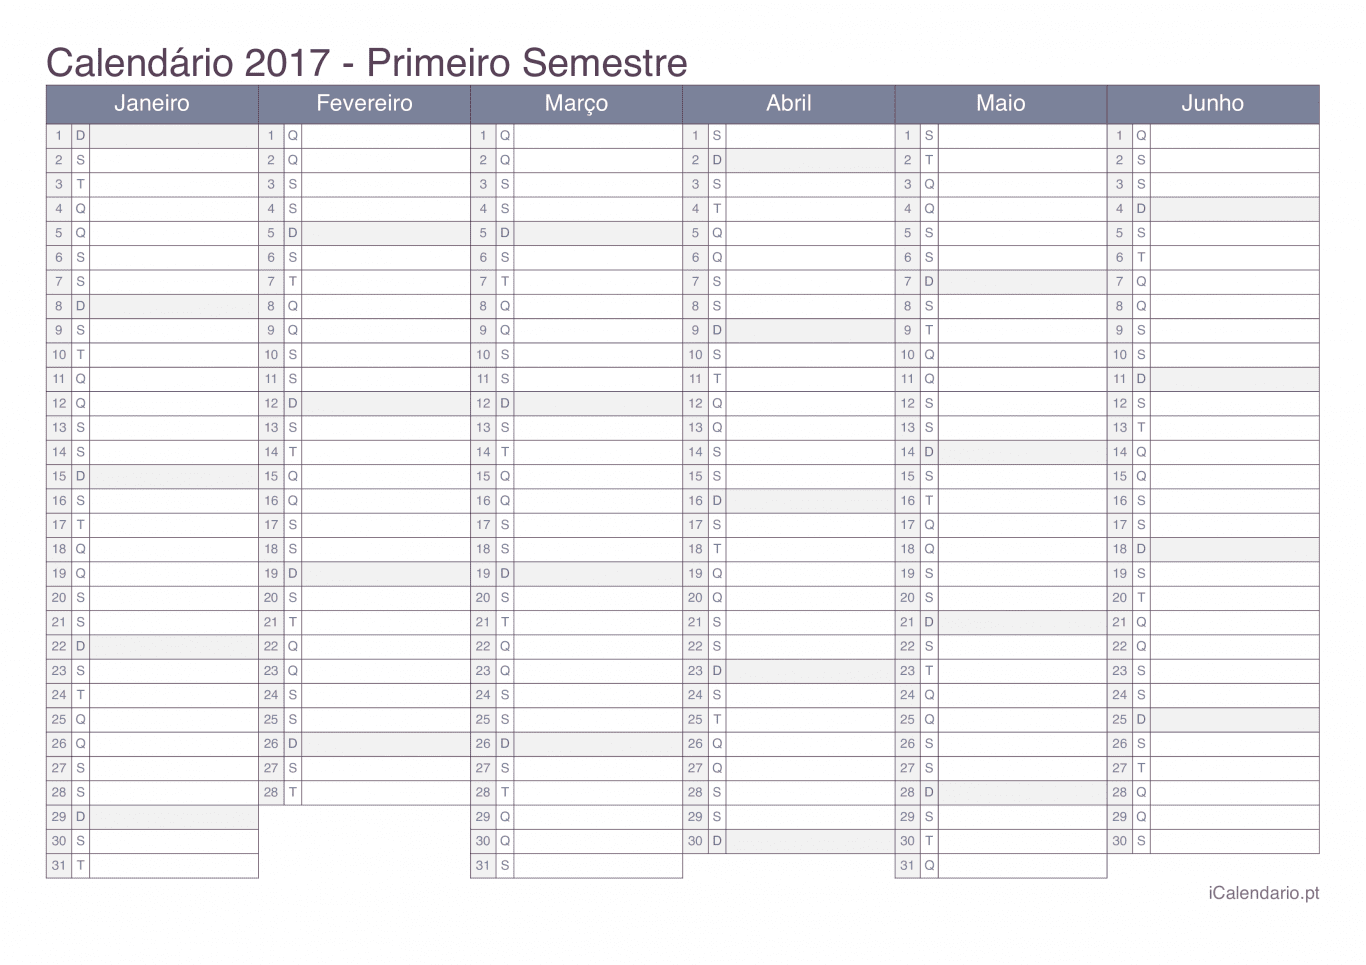 Calendário por semestre 2017 - Office